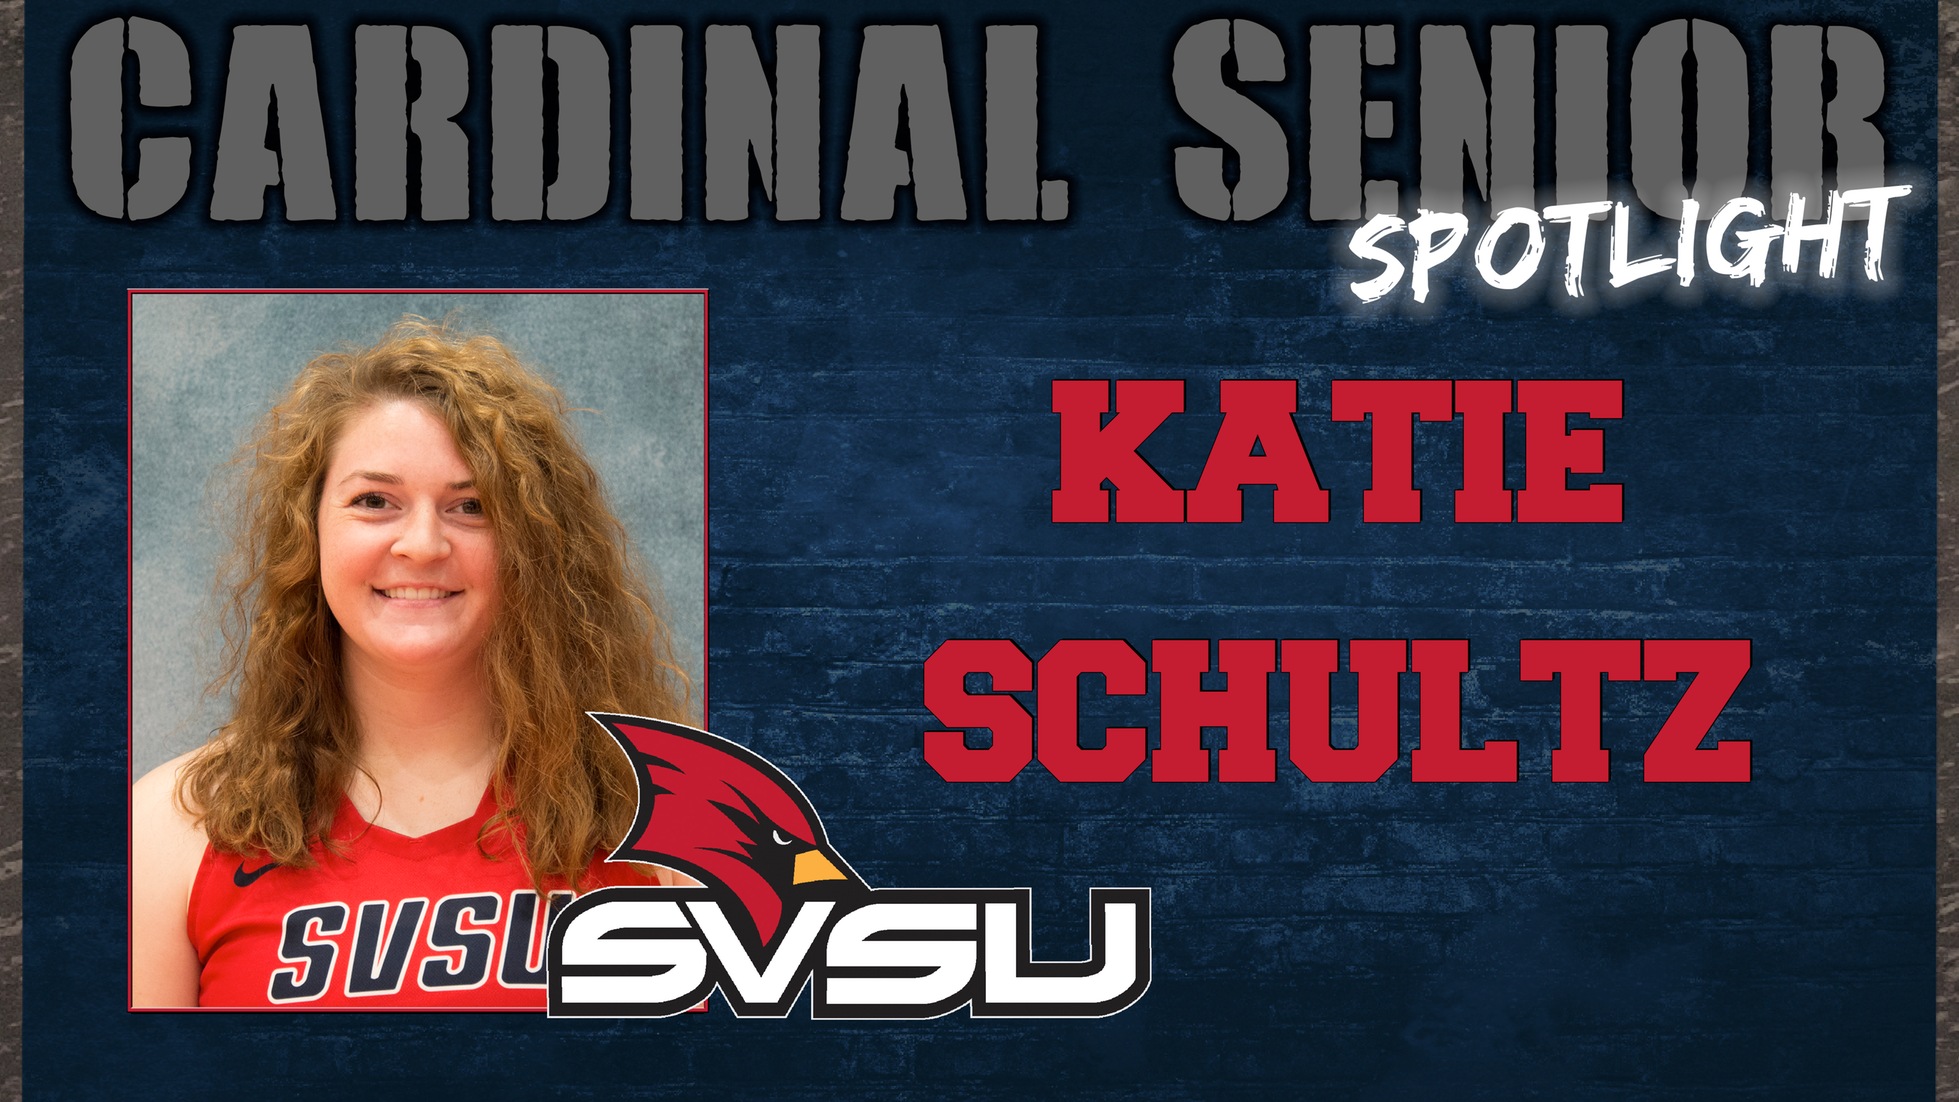 SVSU Cardinal Senior Spotlight - Katie Schultz